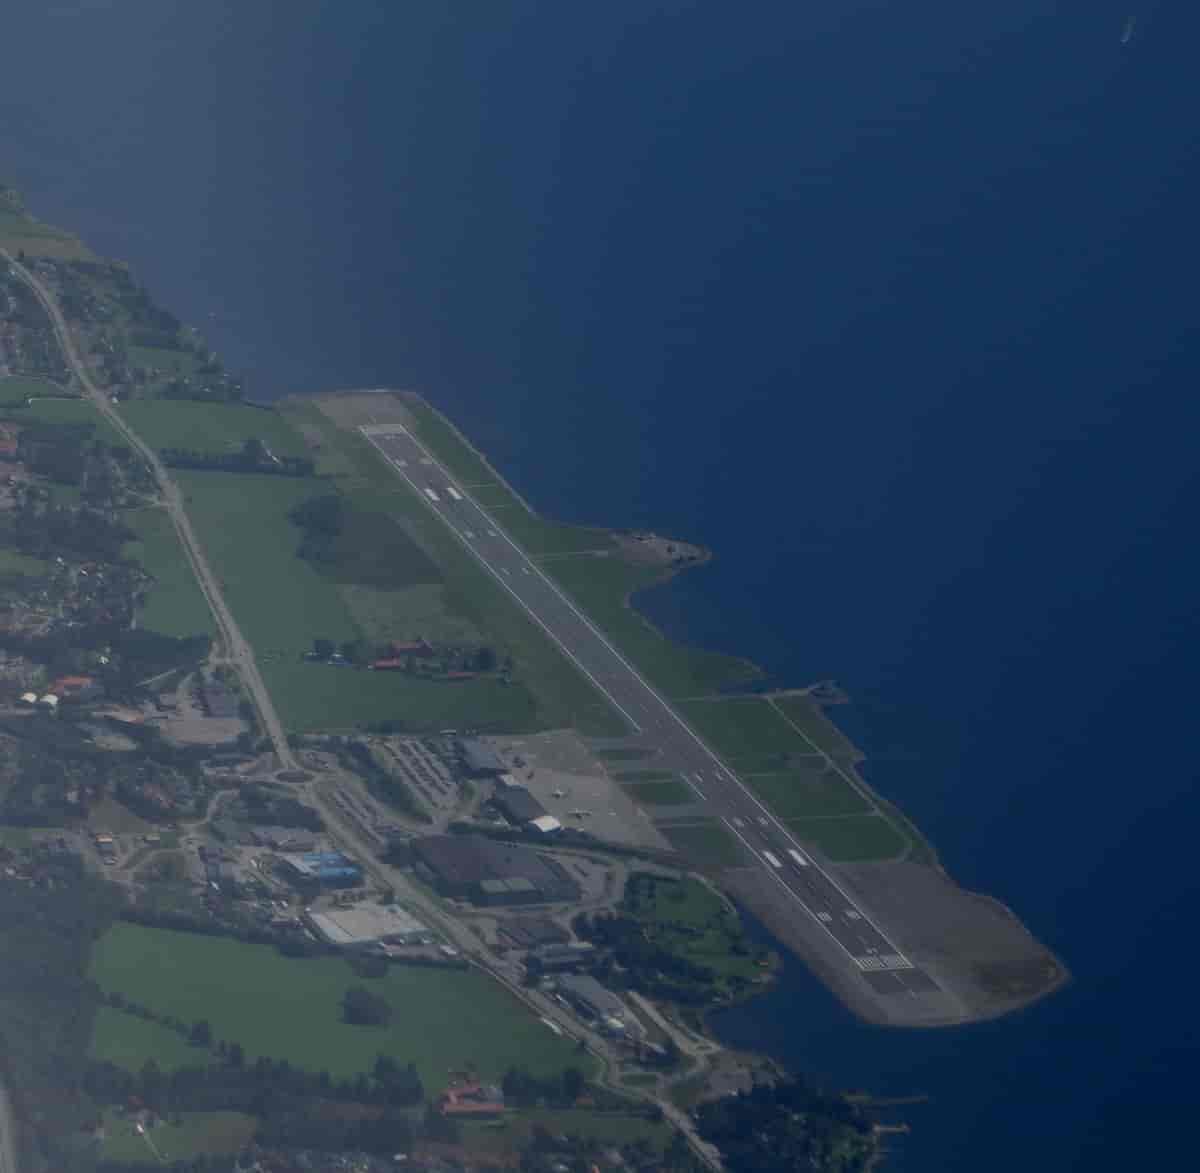 Molde lufthavn, Årø (fotoutsnitt)